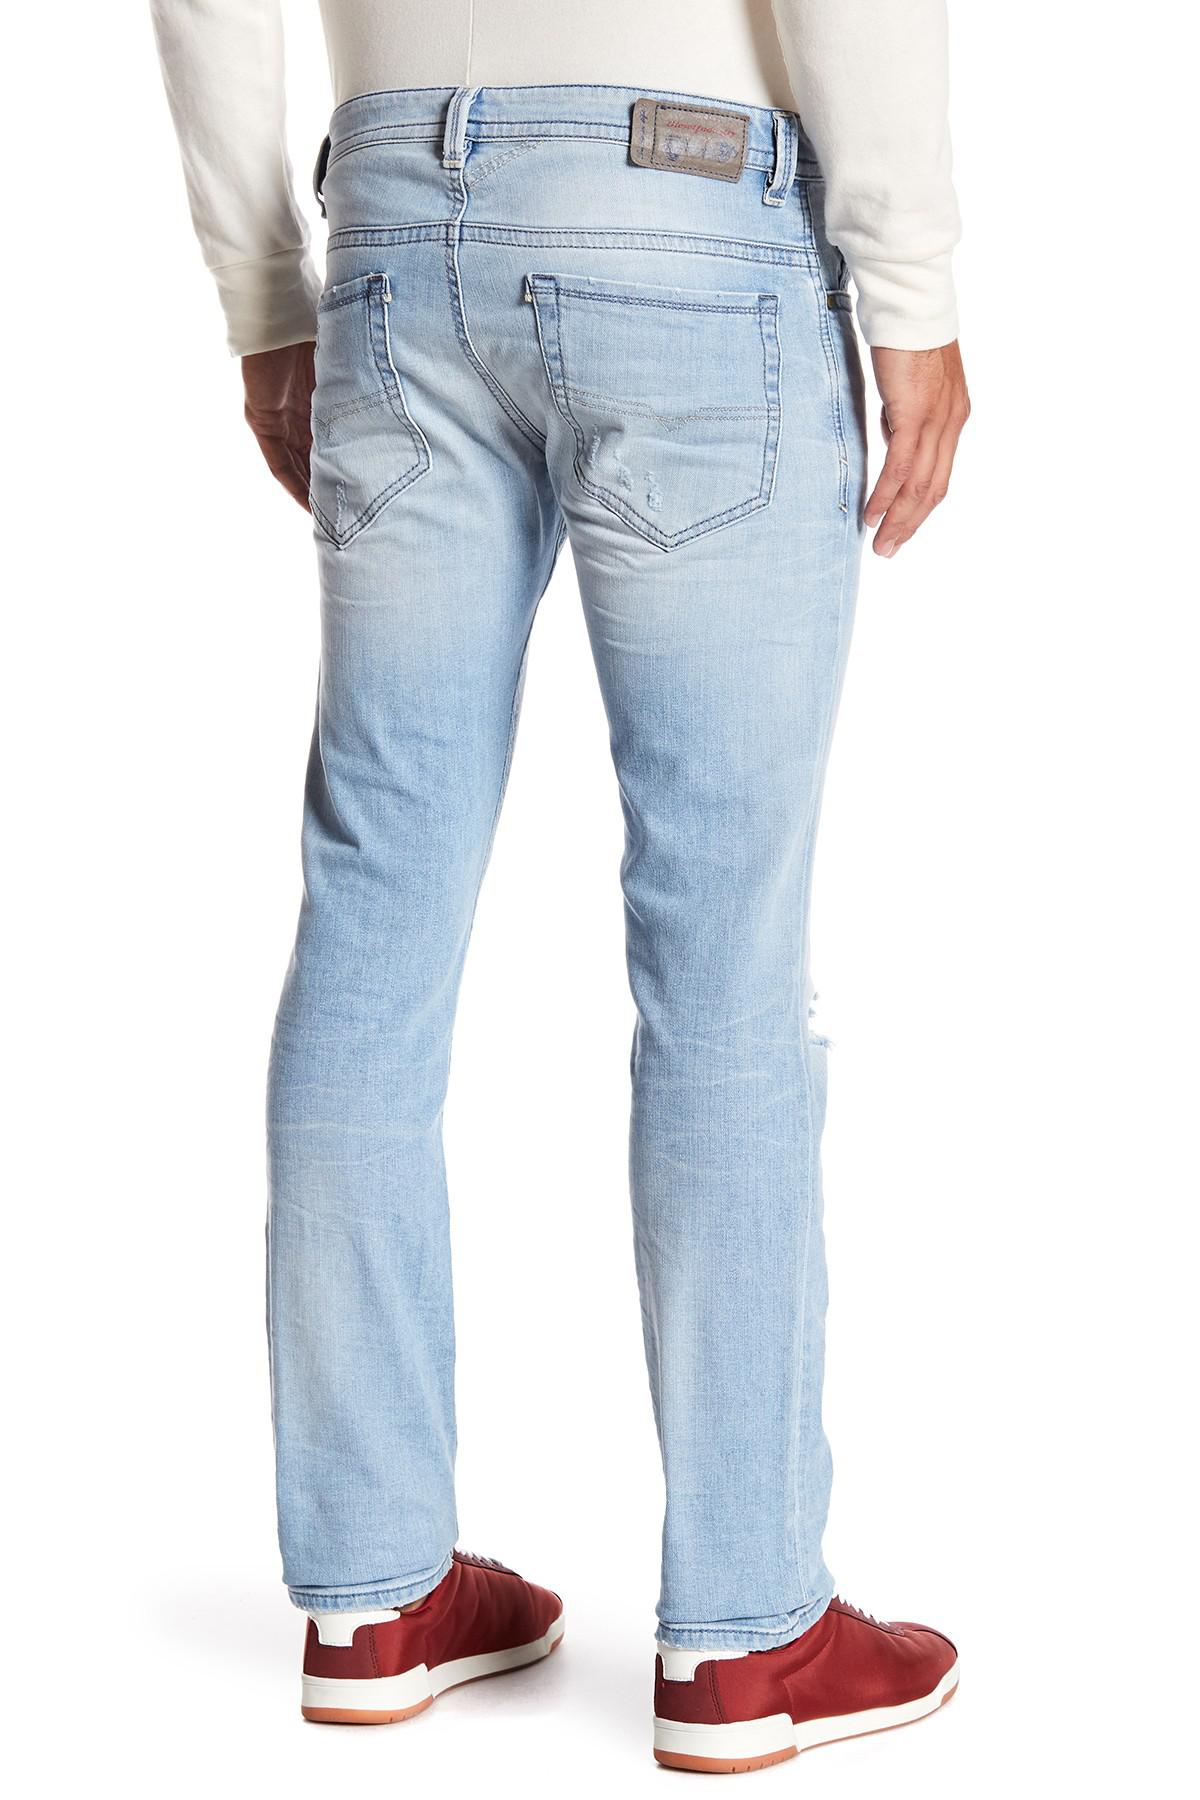 Lyst - Diesel Thavar Slim Skinny Jeans in Blue for Men